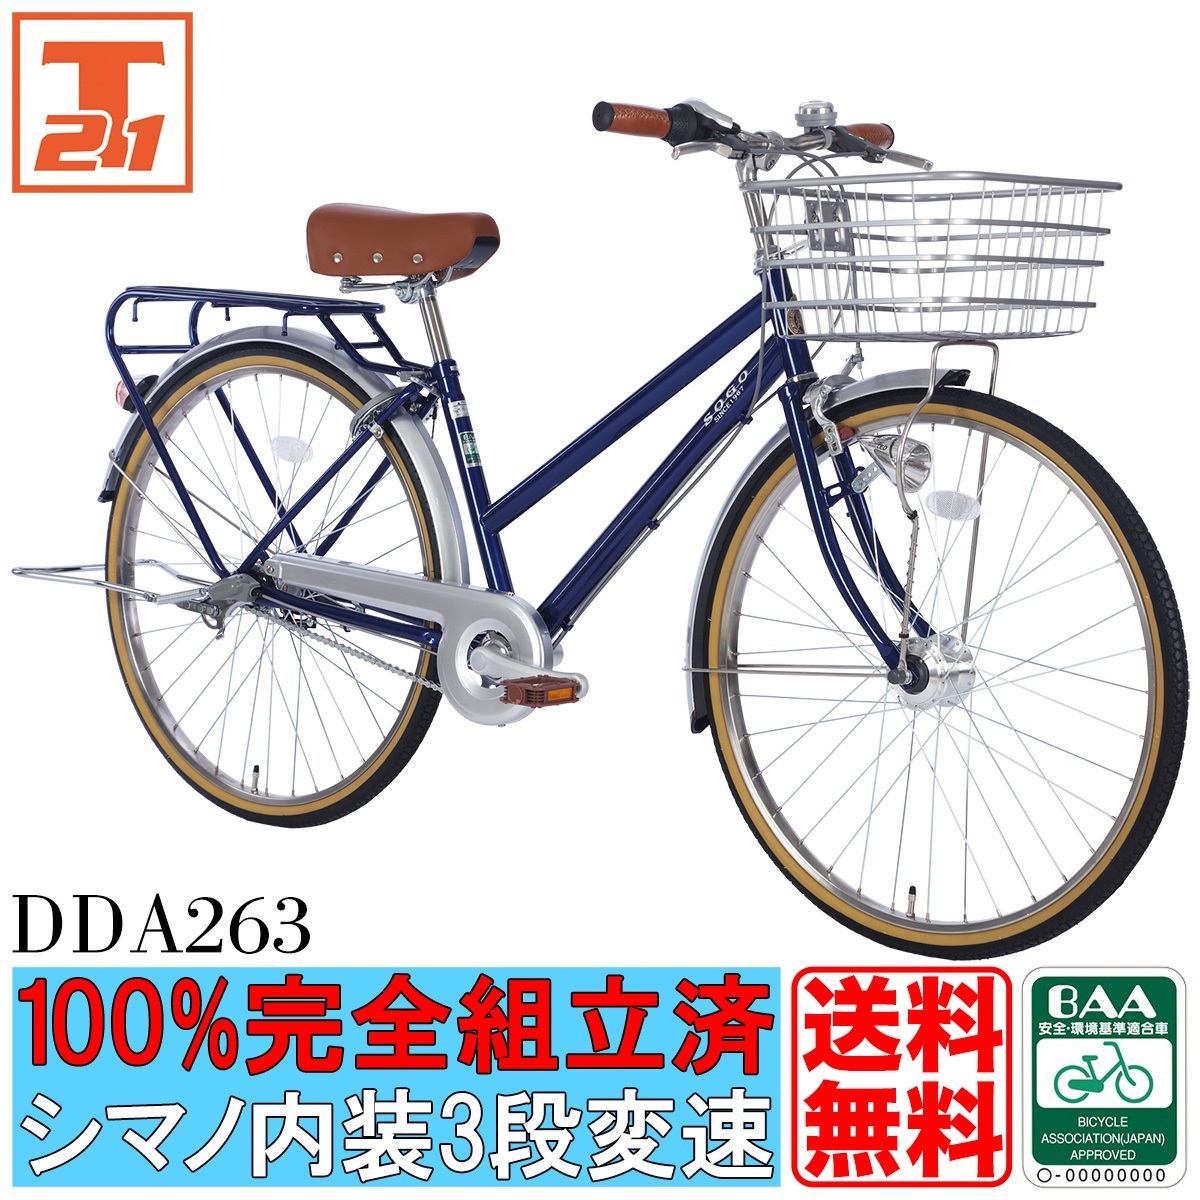 1194]中古自転車 シティサイクル 26インチ 内装3段変速 ブルー - その他